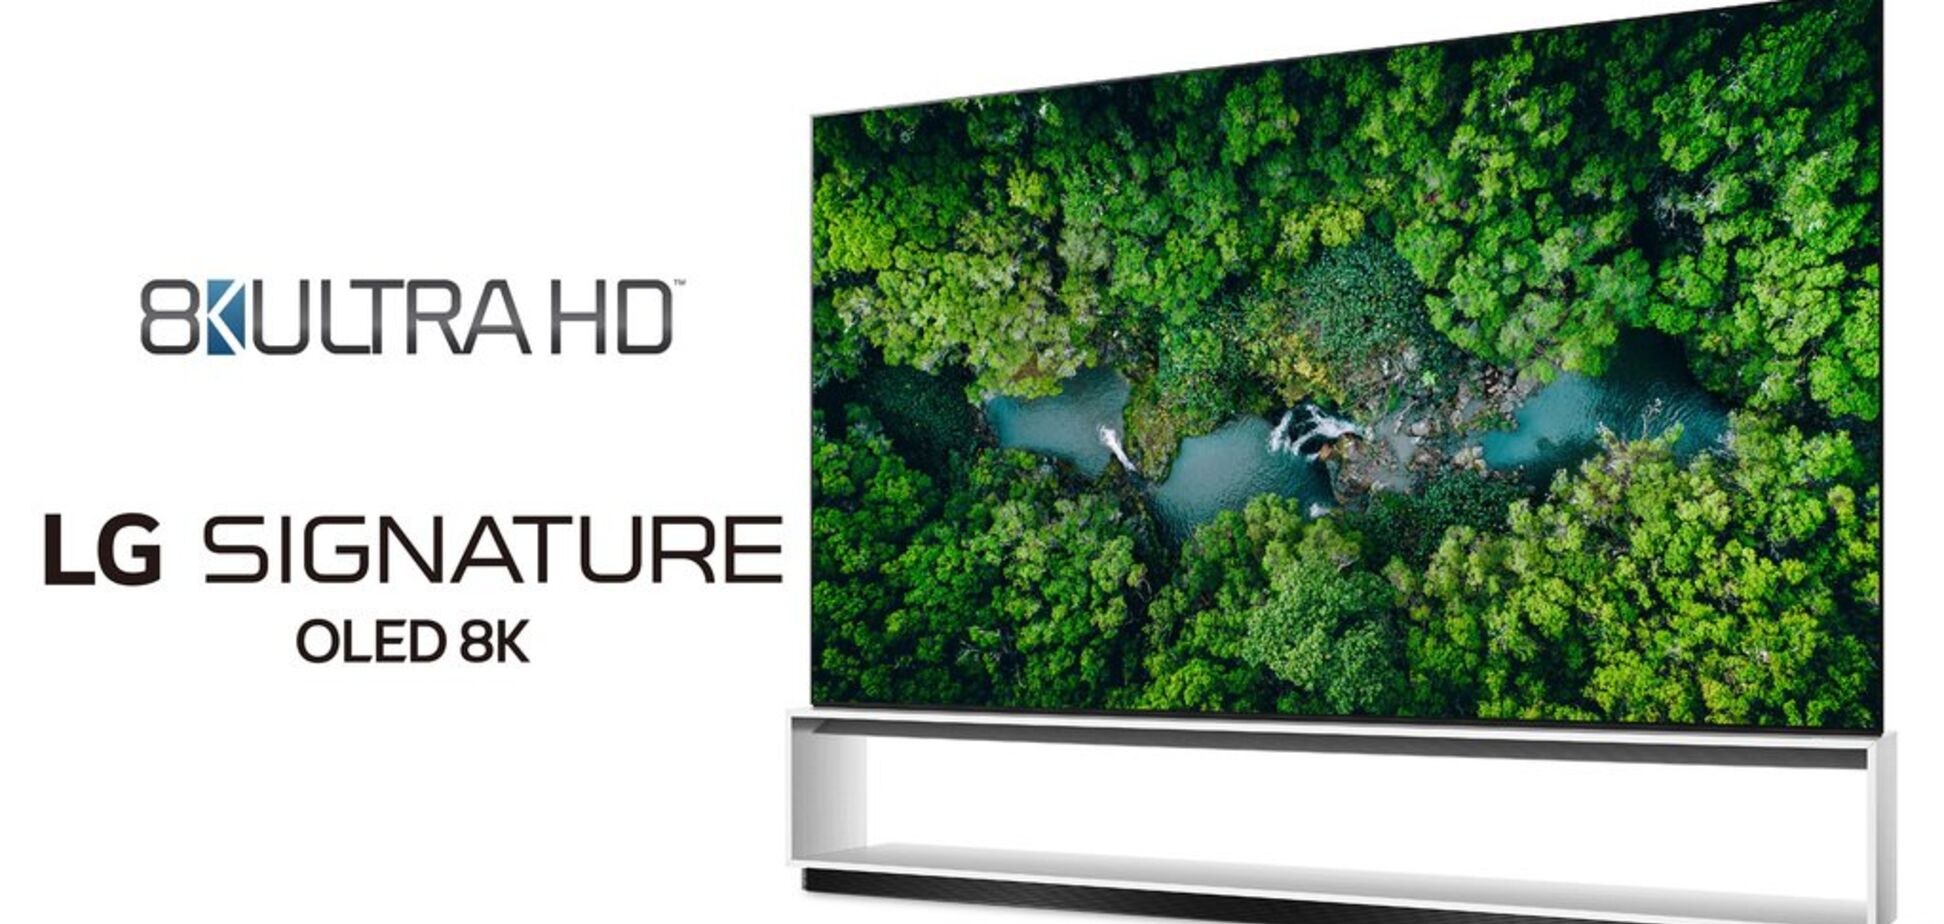 Телевизоры LG первыми превосходят официальное отраслевое определение 8K Ultra HD TV